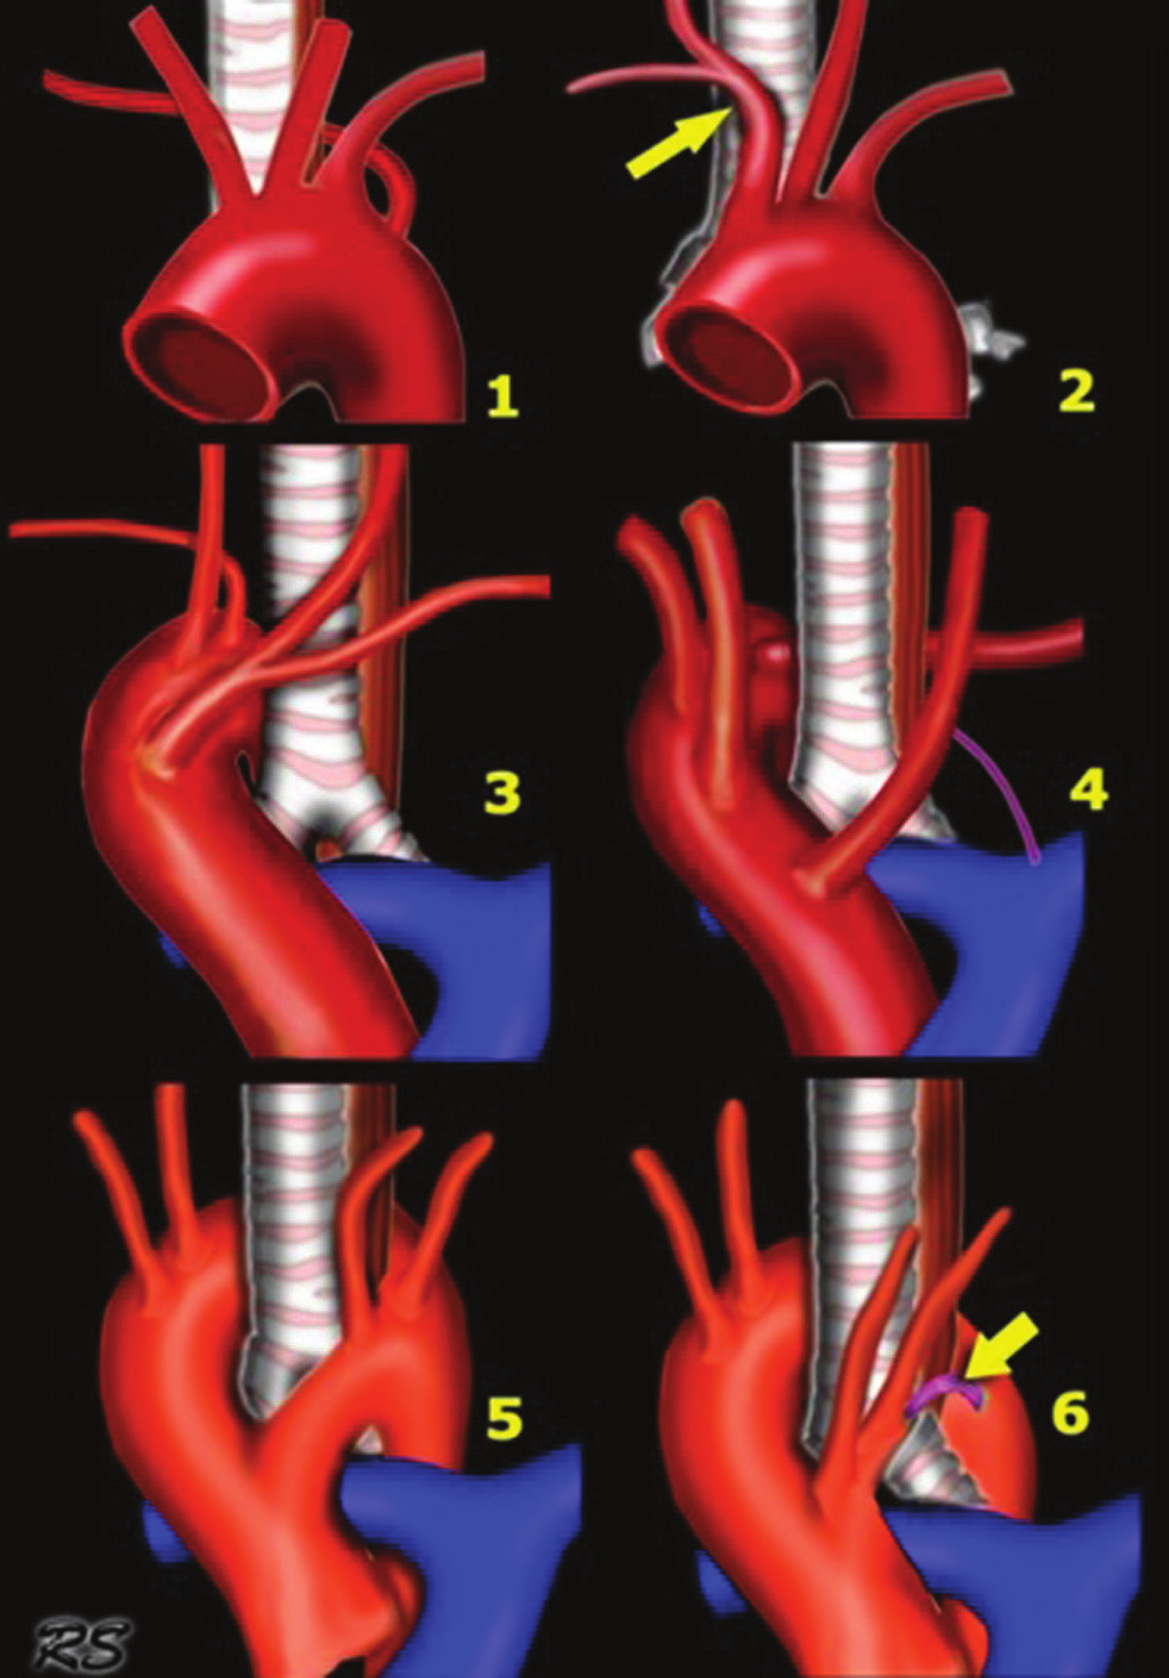 b. Sol arkus aorta ve retroözefajial Kommerel di vertikülü c. Sol arkus Aorta ile sağ inen aorta ve sağ duktus (veya ligamentum) birlikteliği d.